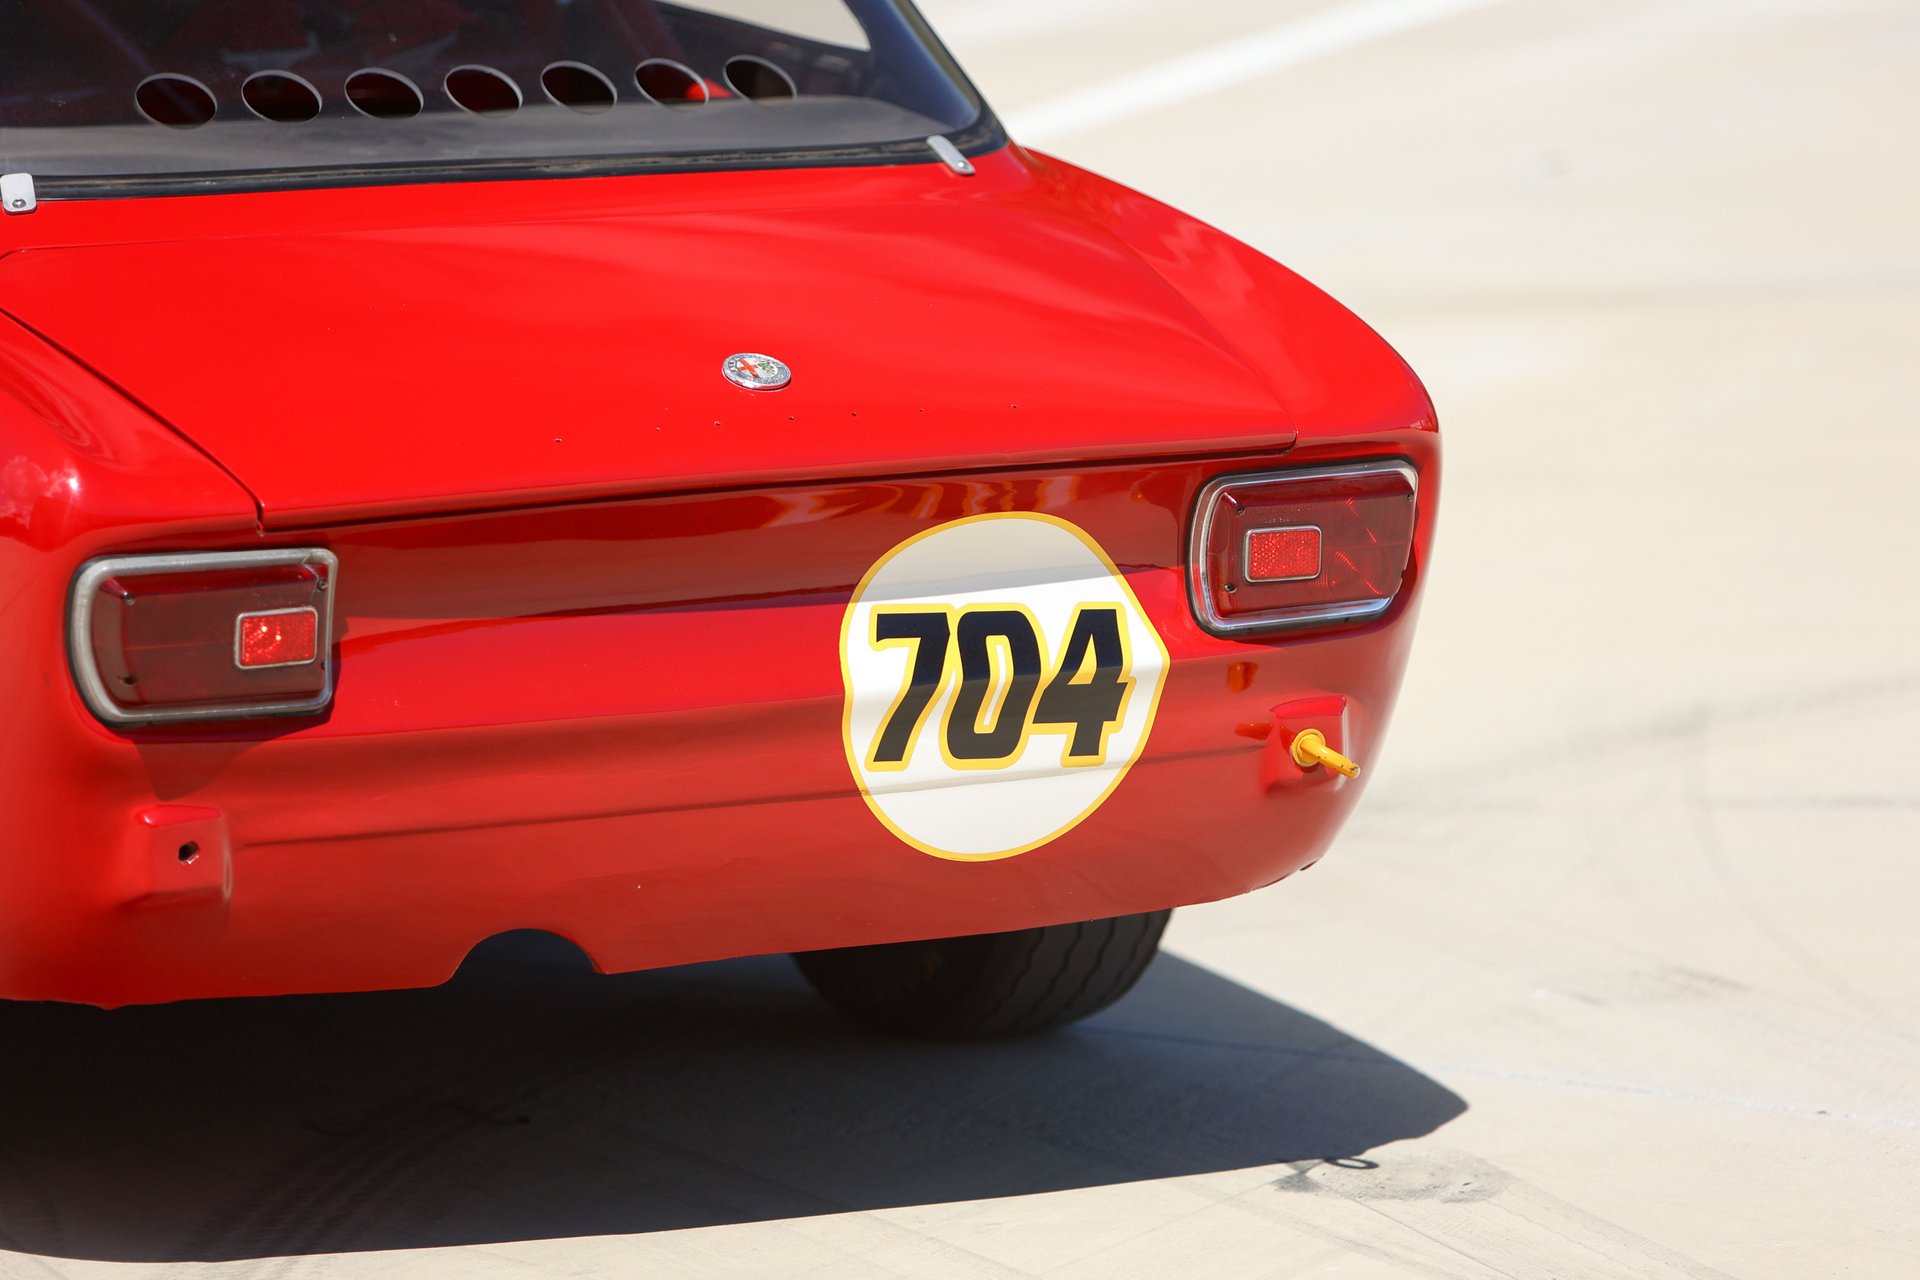 For Sale 1969 Alfa Romeo 1750 GTV Race Car